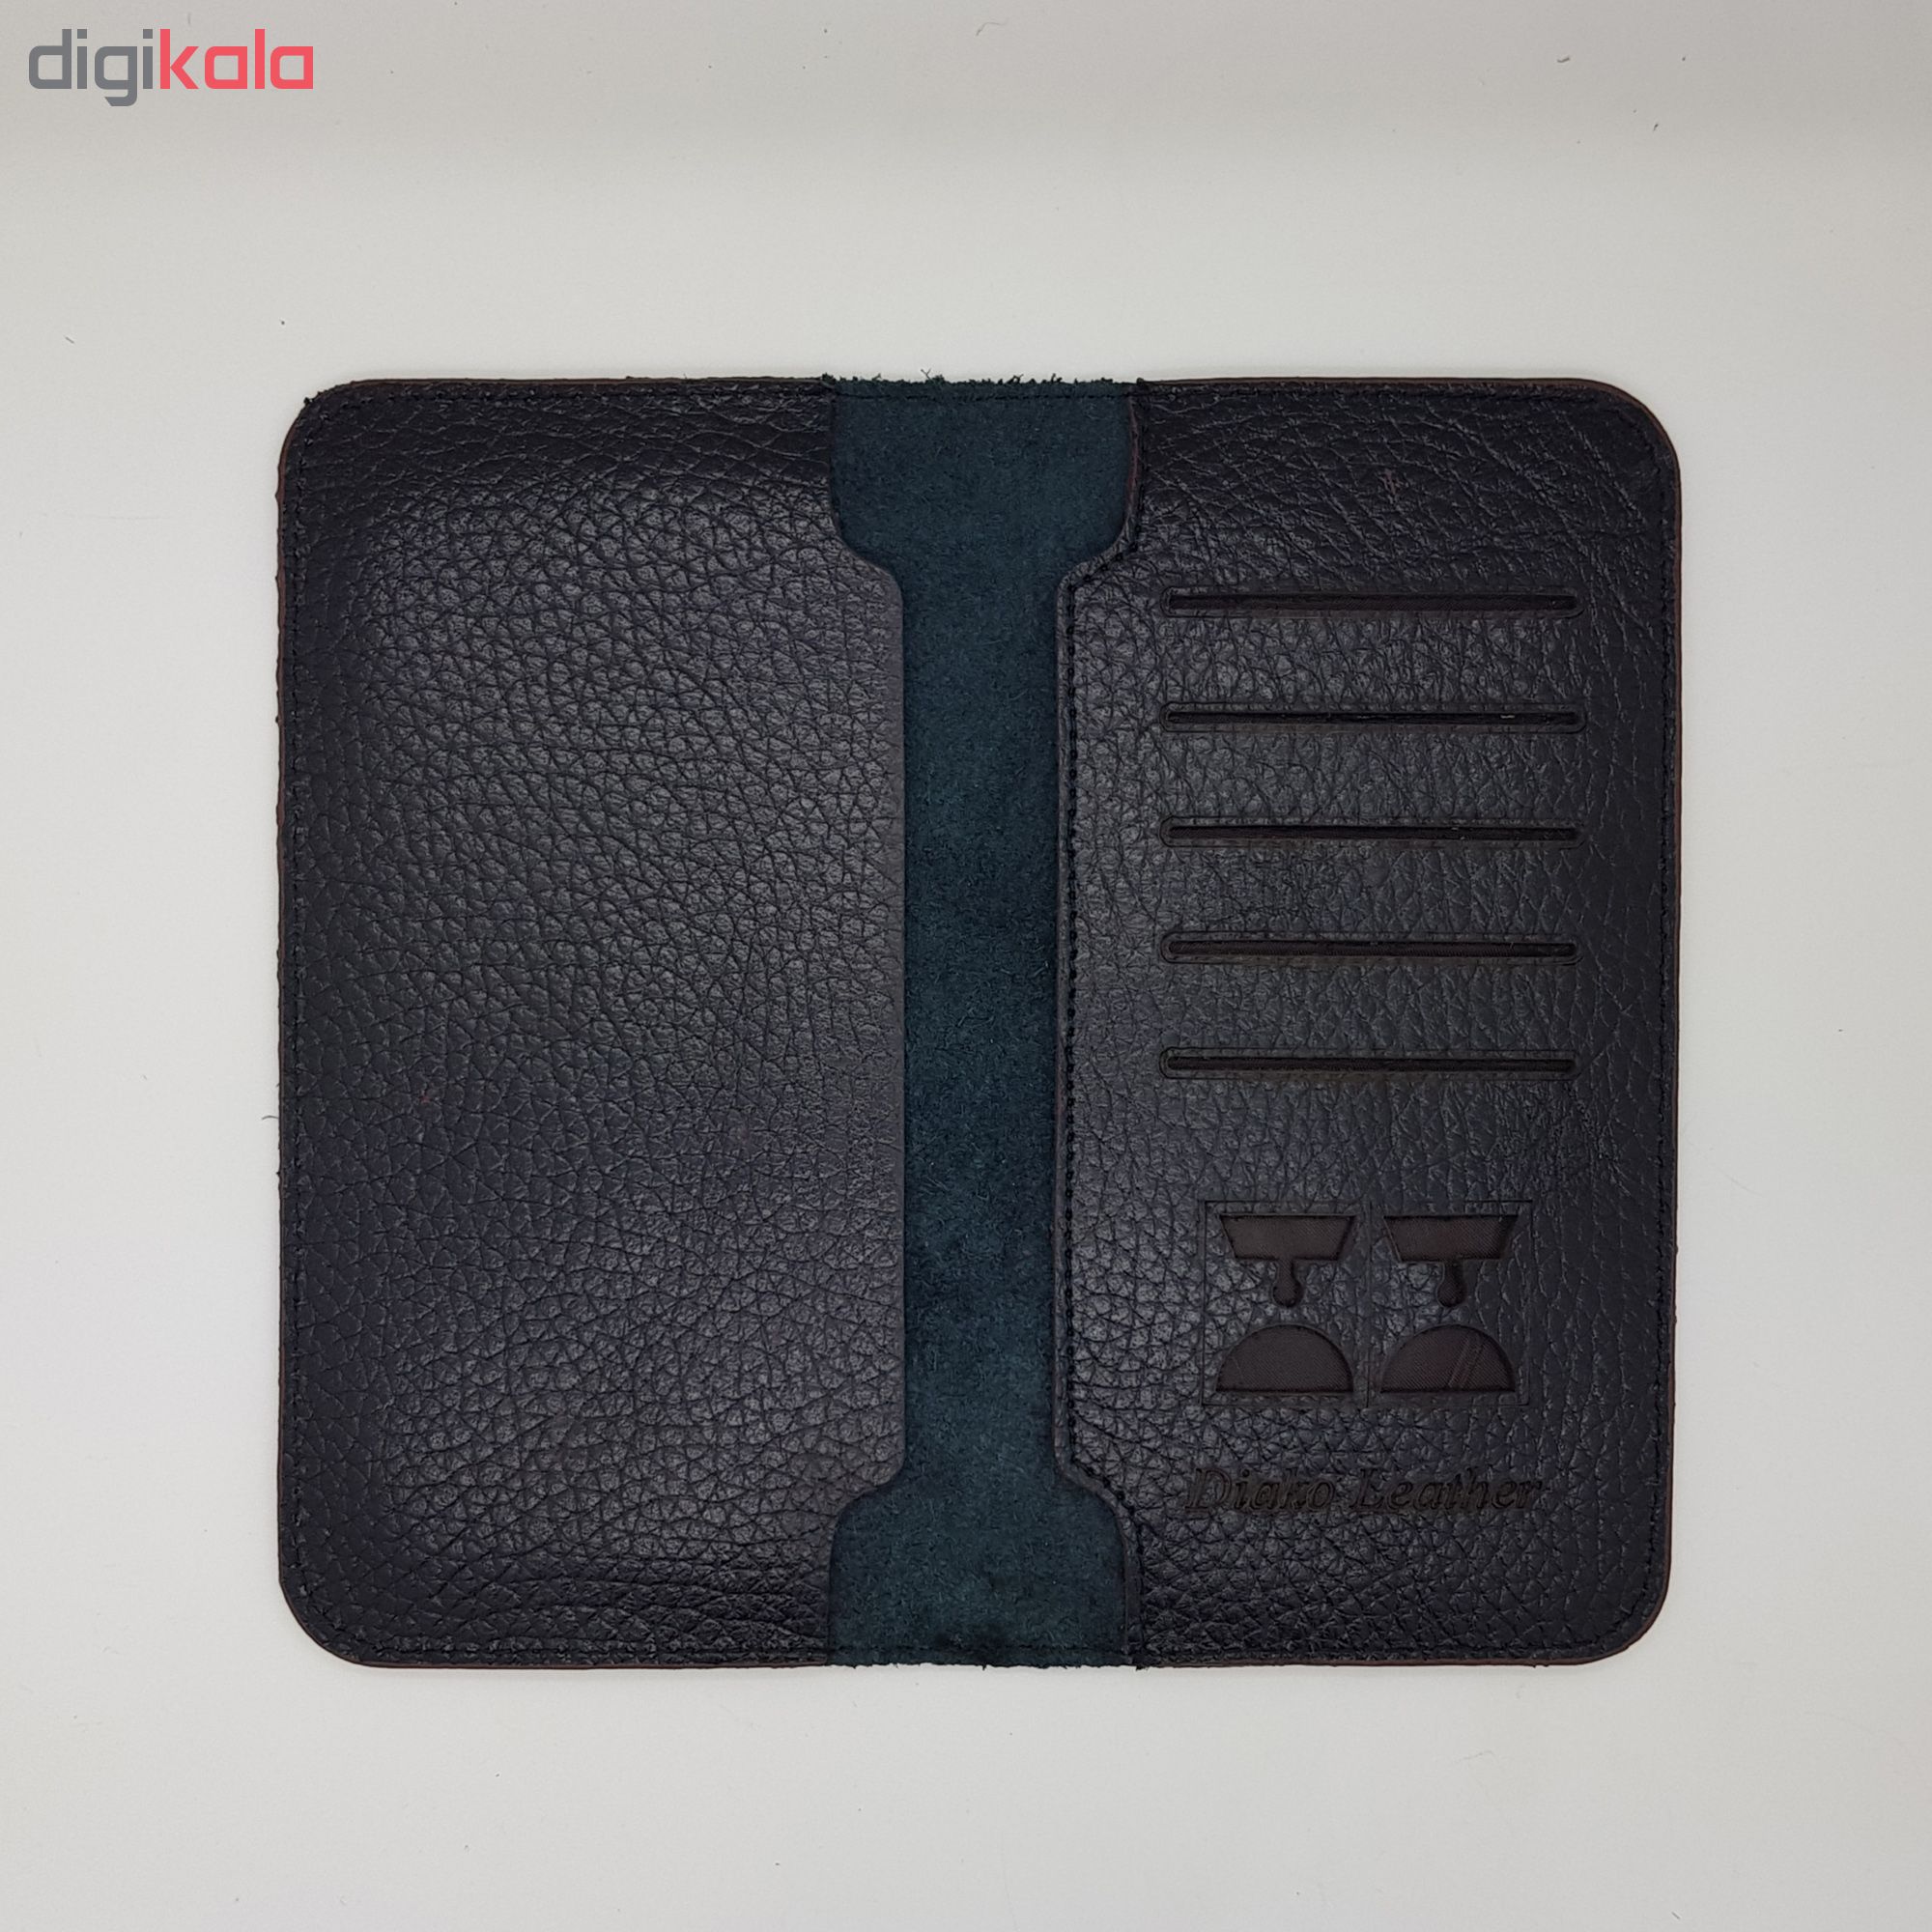 DIYAKO natural leather wallet, code 255